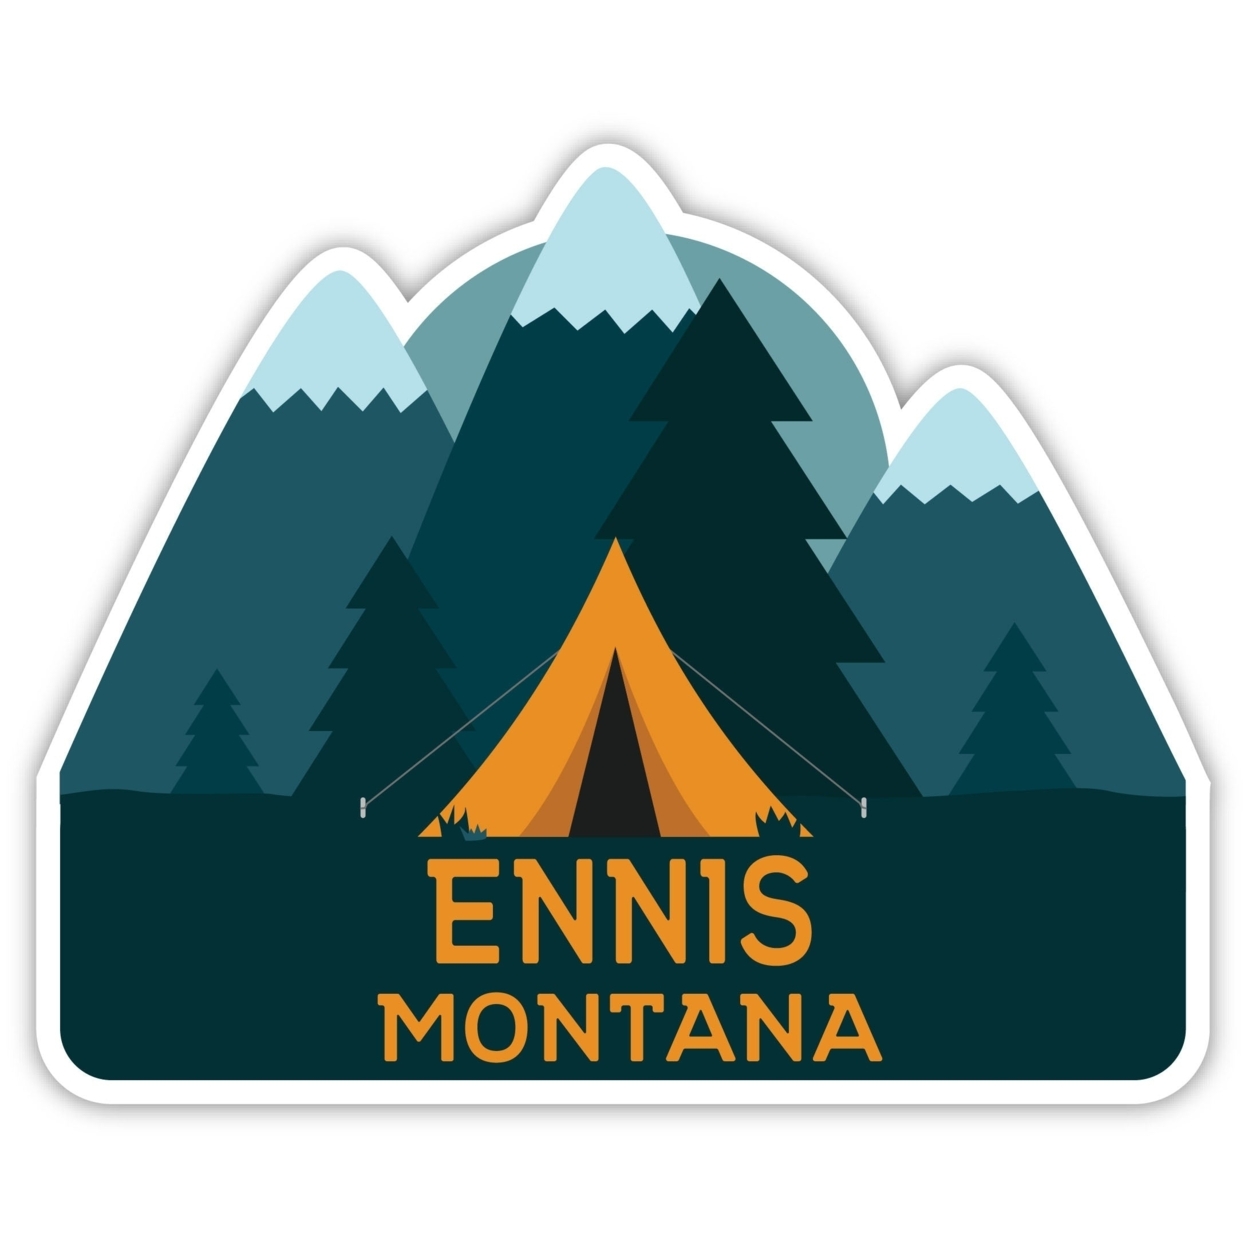 Ennis Montana Souvenir Decorative Stickers (Choose Theme And Size) - Single Unit, 12-Inch, Tent